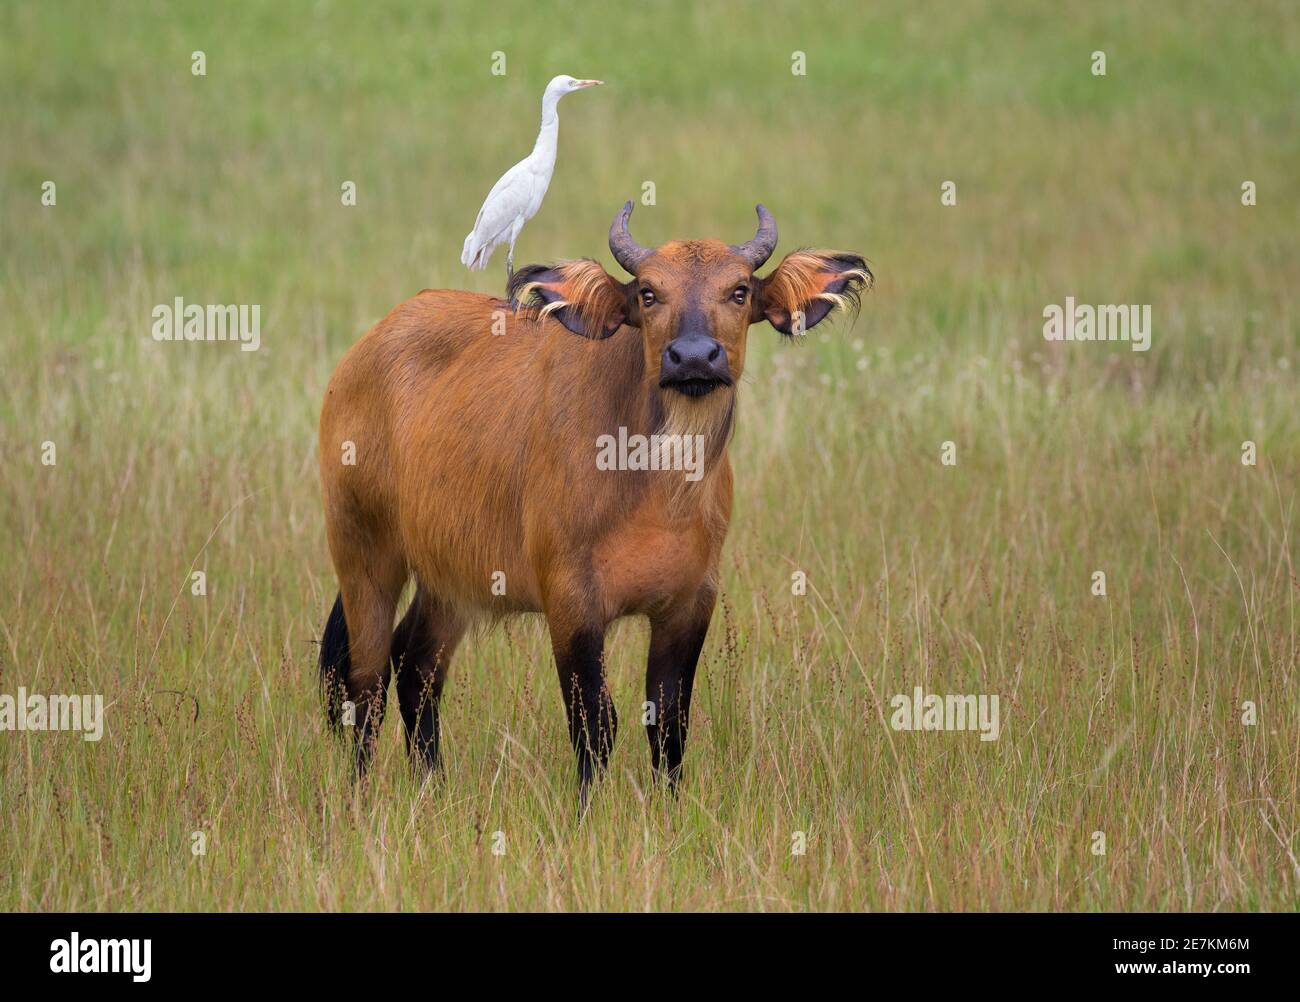 Forêt africaine ou Dwarf Buffalo (Syncerus caffer nanus) avec bétail Egret (Bubulcus ibis) à l'arrière, Parc national de Loango, Gabon, Afrique centrale. Banque D'Images